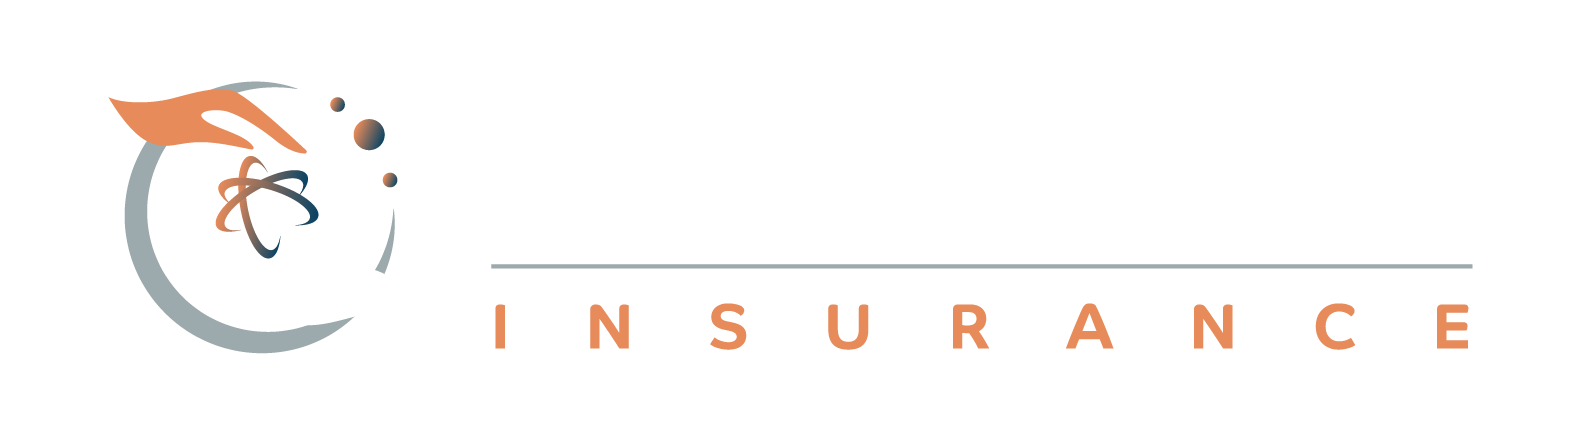 nucleus insurance